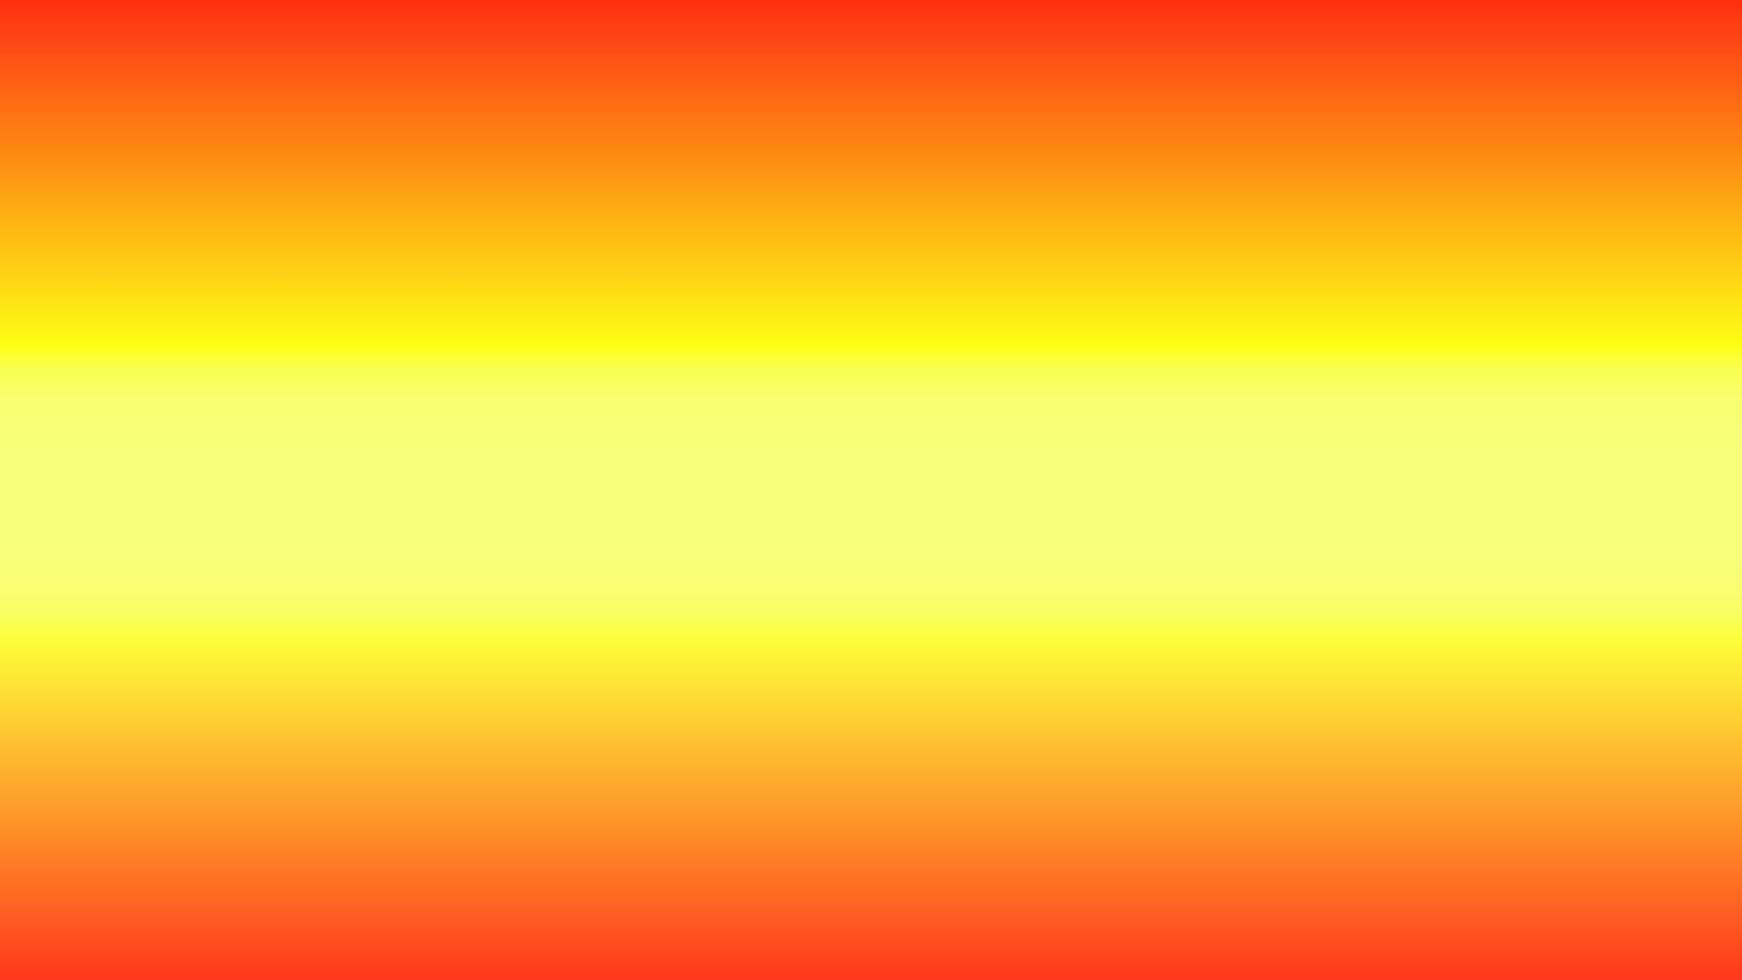 abstrakt ljusgul, orange gradientbakgrund perfekt för marknadsföring, presentation, tapeter, design etc vektor